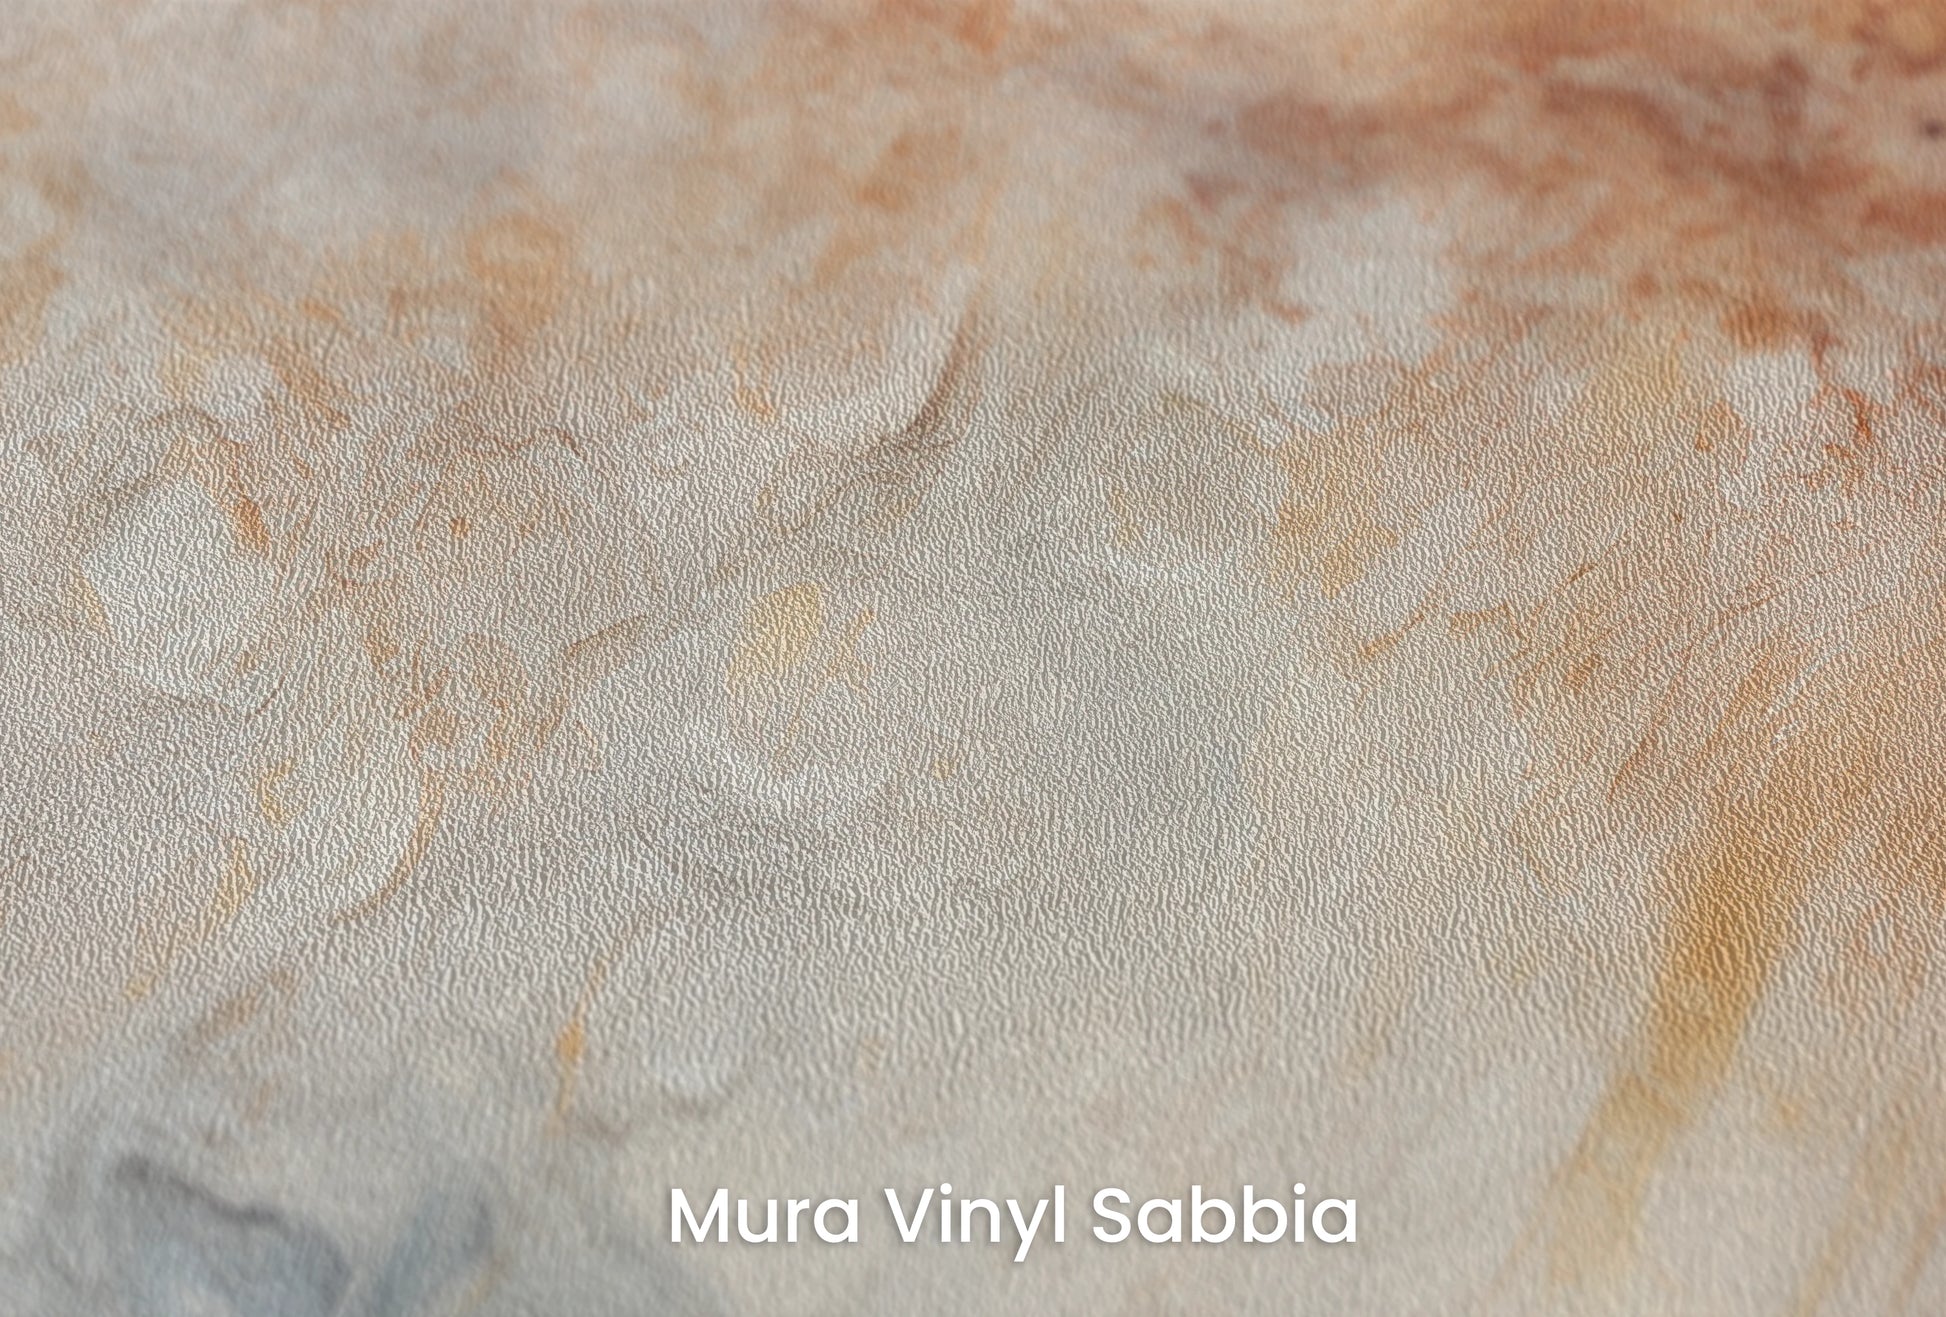 Zbliżenie na artystyczną fototapetę o nazwie Jupiter's Canvas na podłożu Mura Vinyl Sabbia struktura grubego ziarna piasku.